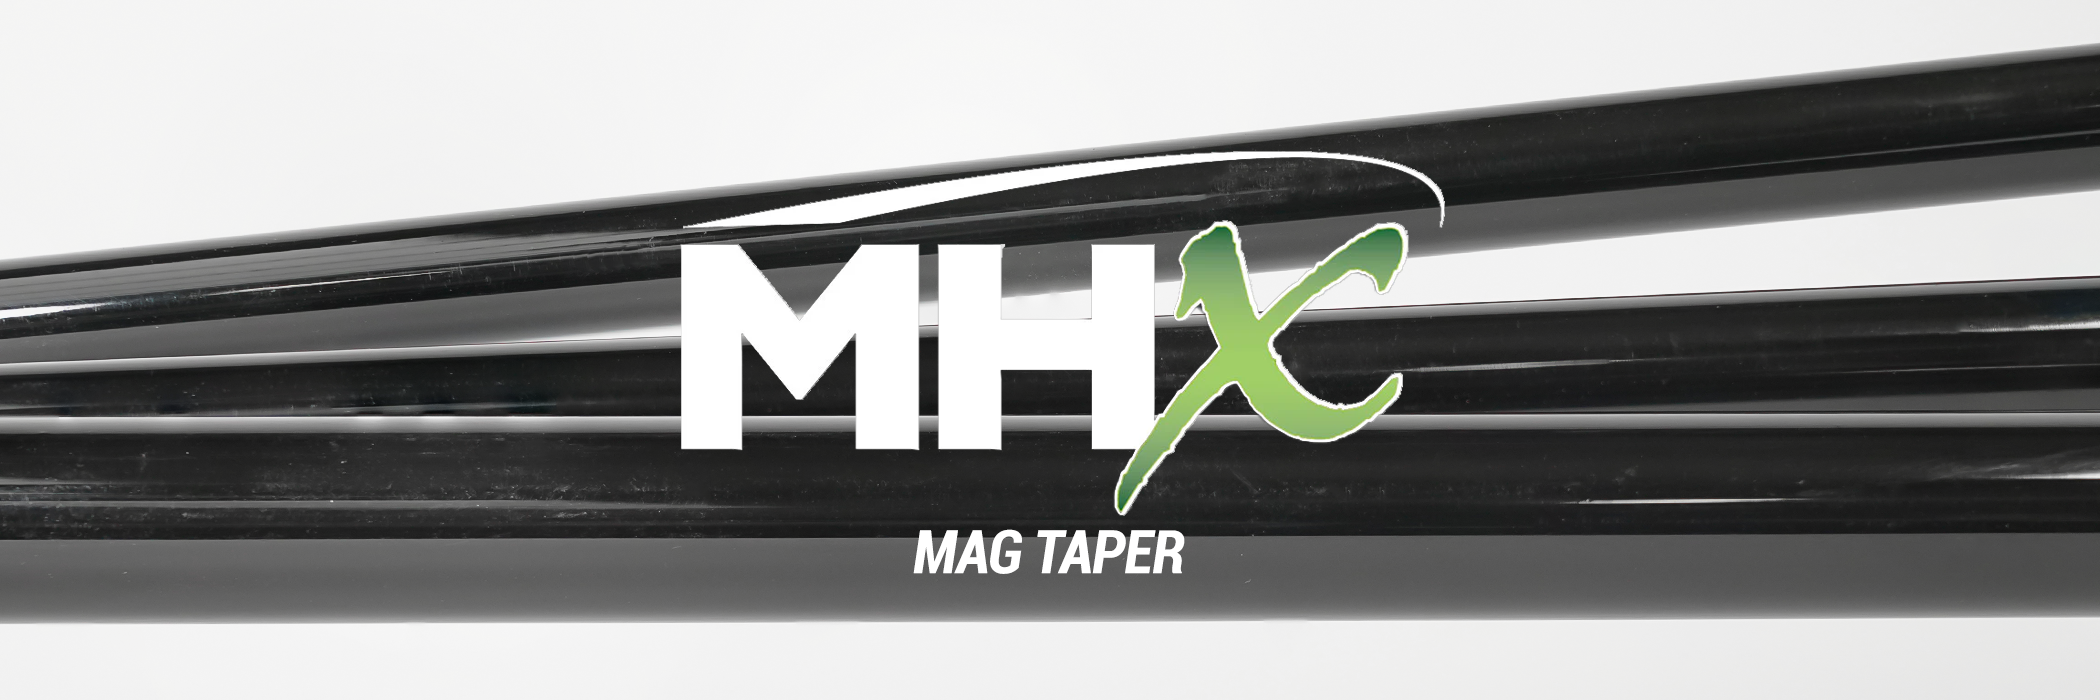 MHX - Mag Taper